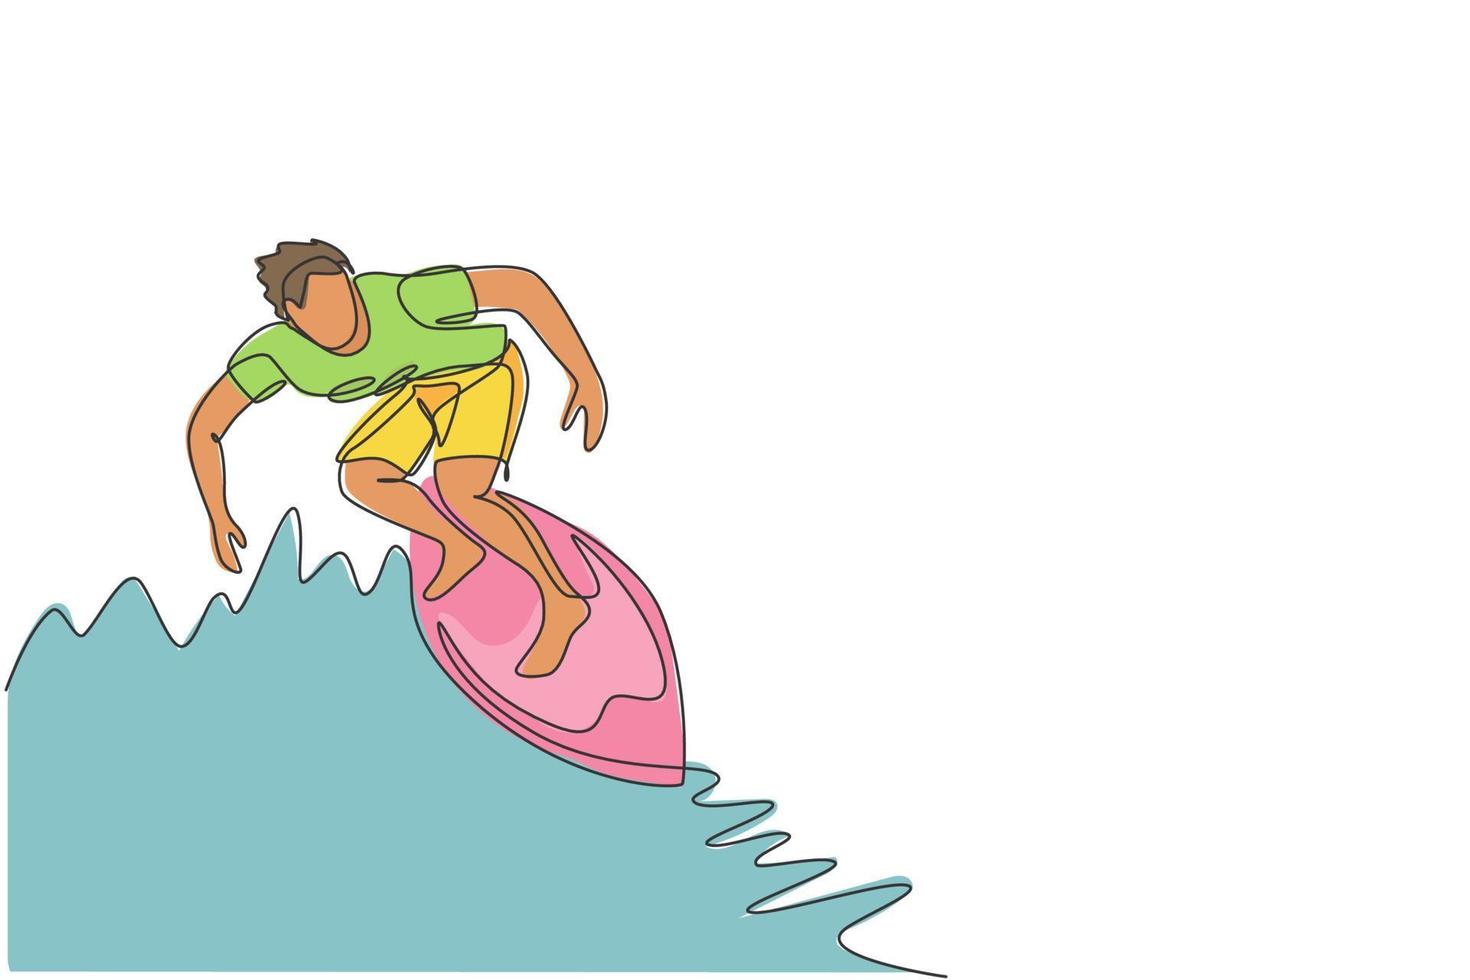 un dibujo de una sola línea de un joven surfista deportivo montado en un barril de grandes olas en la ilustración vectorial del paraíso de la playa de surf. concepto de estilo de vida de deportes acuáticos extremos. diseño moderno de dibujo de línea continua vector